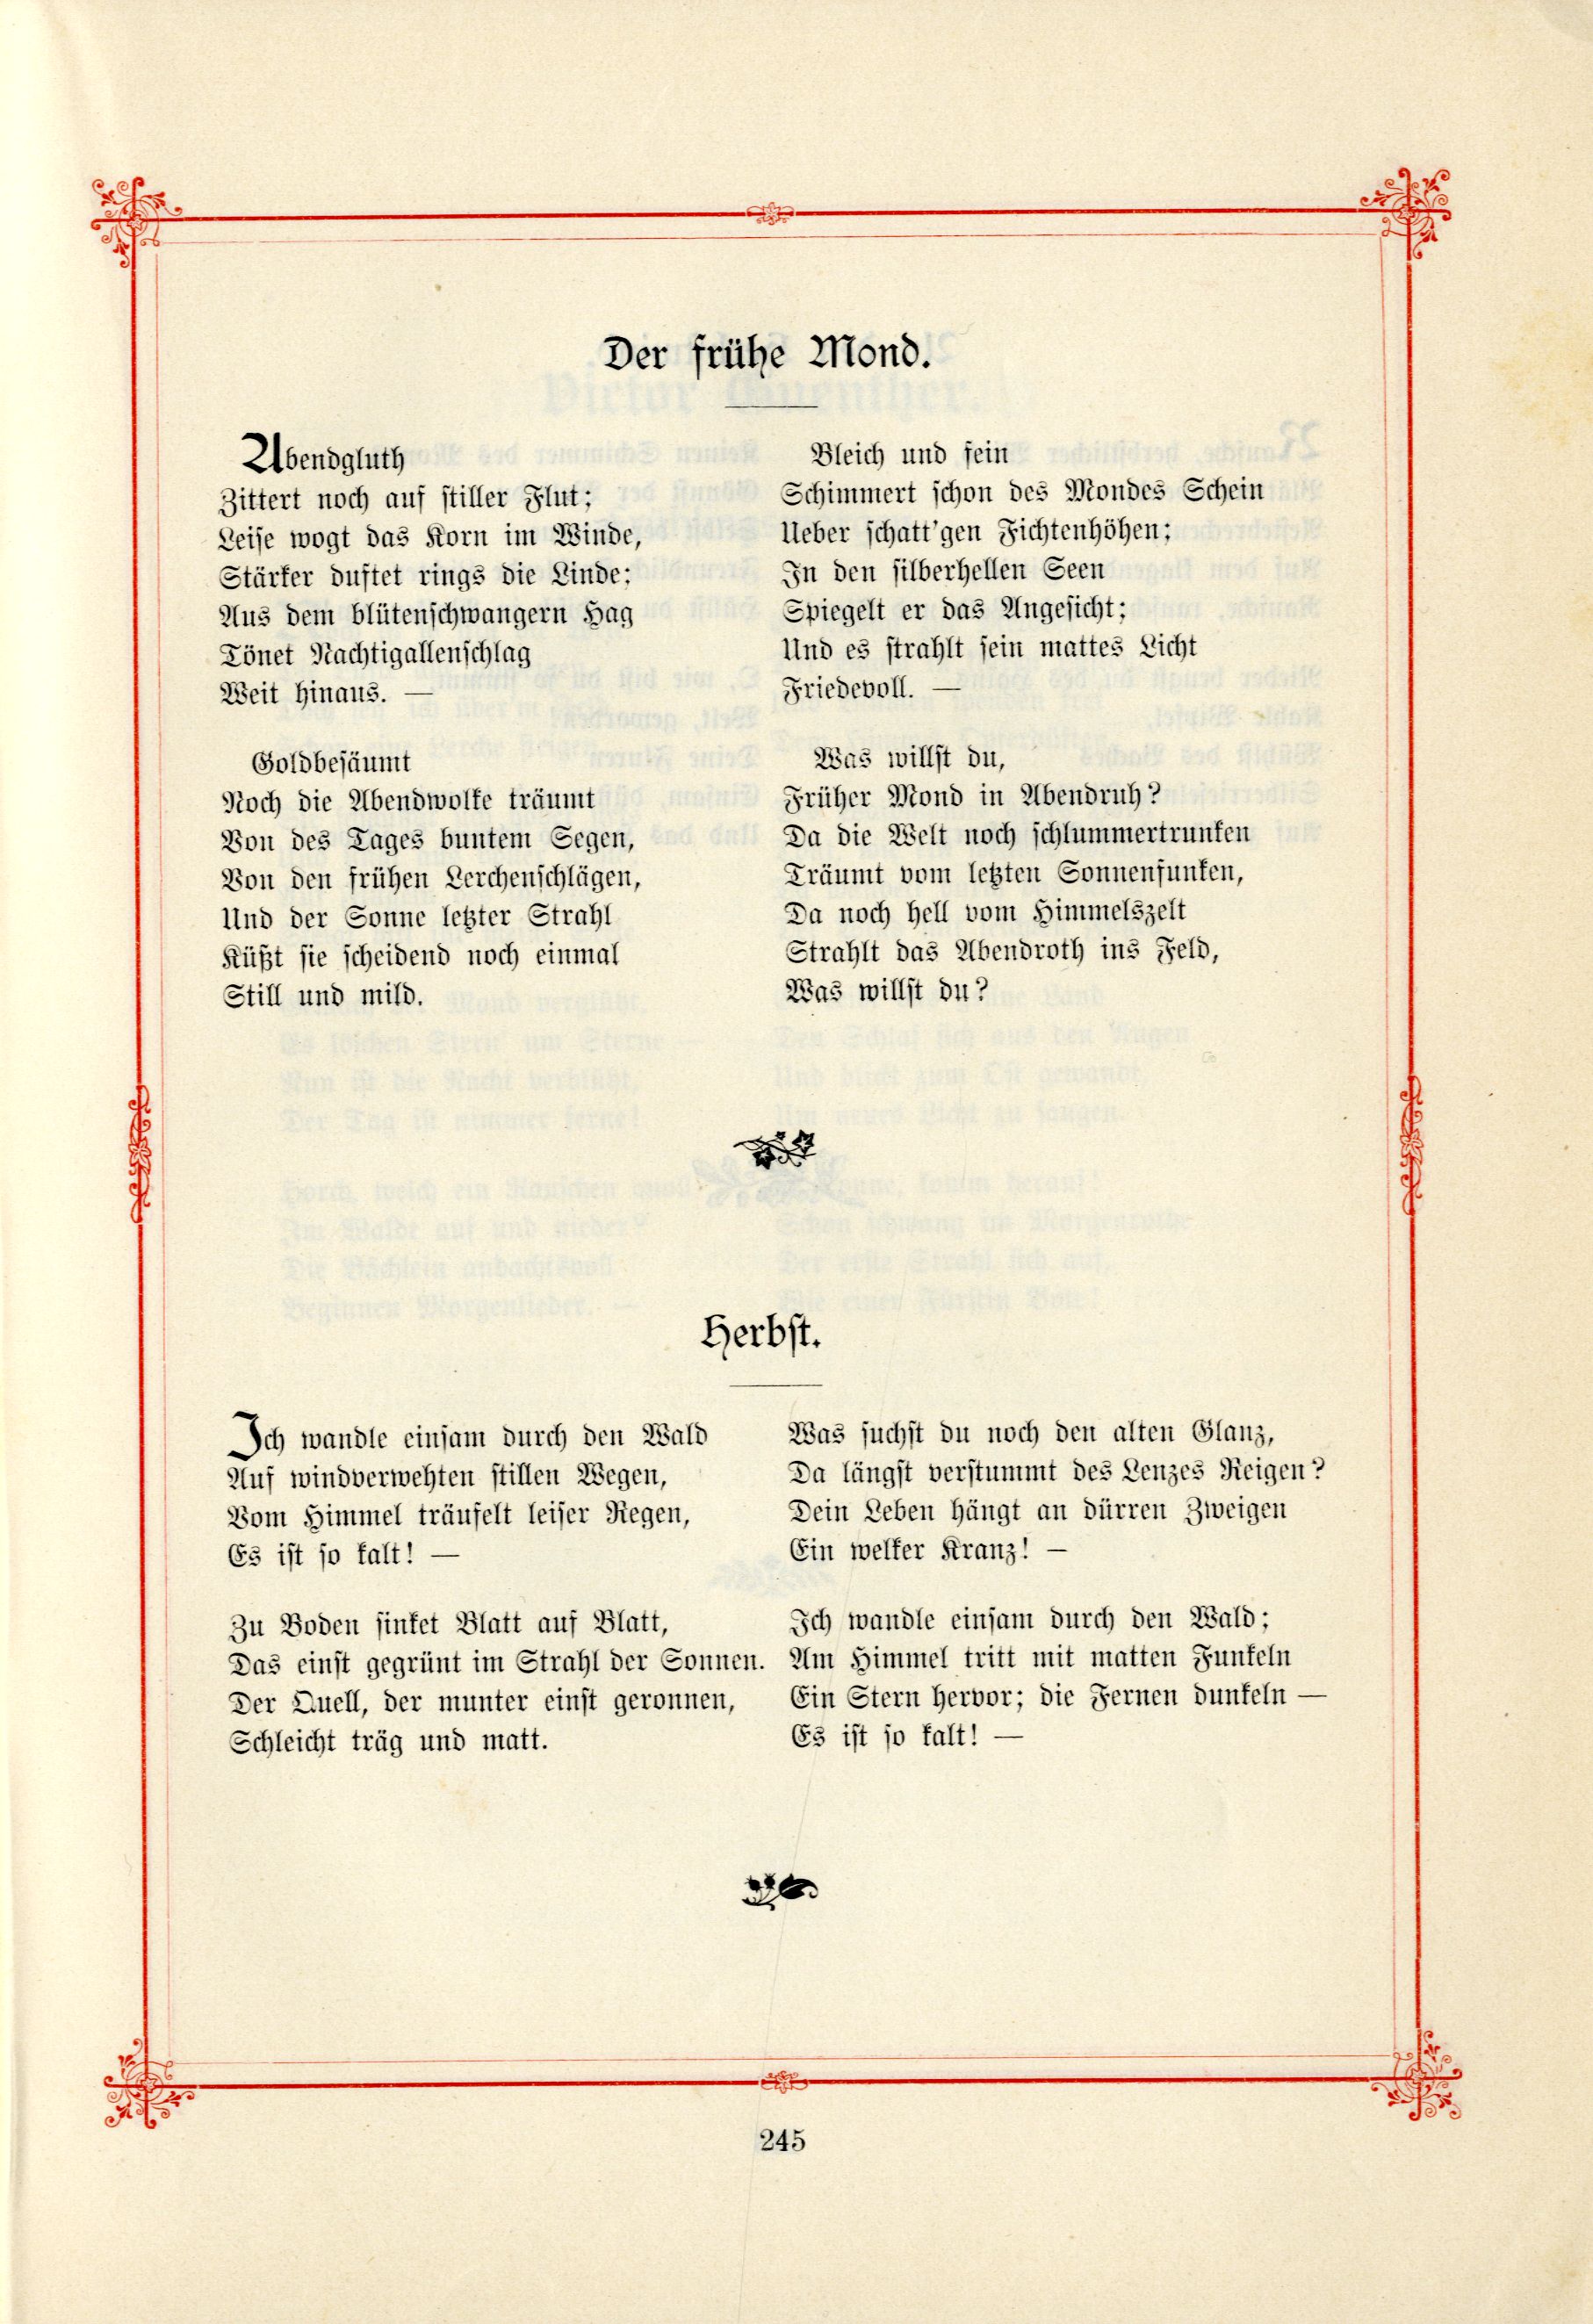 Das Baltische Dichterbuch (1895) | 291. (245) Main body of text